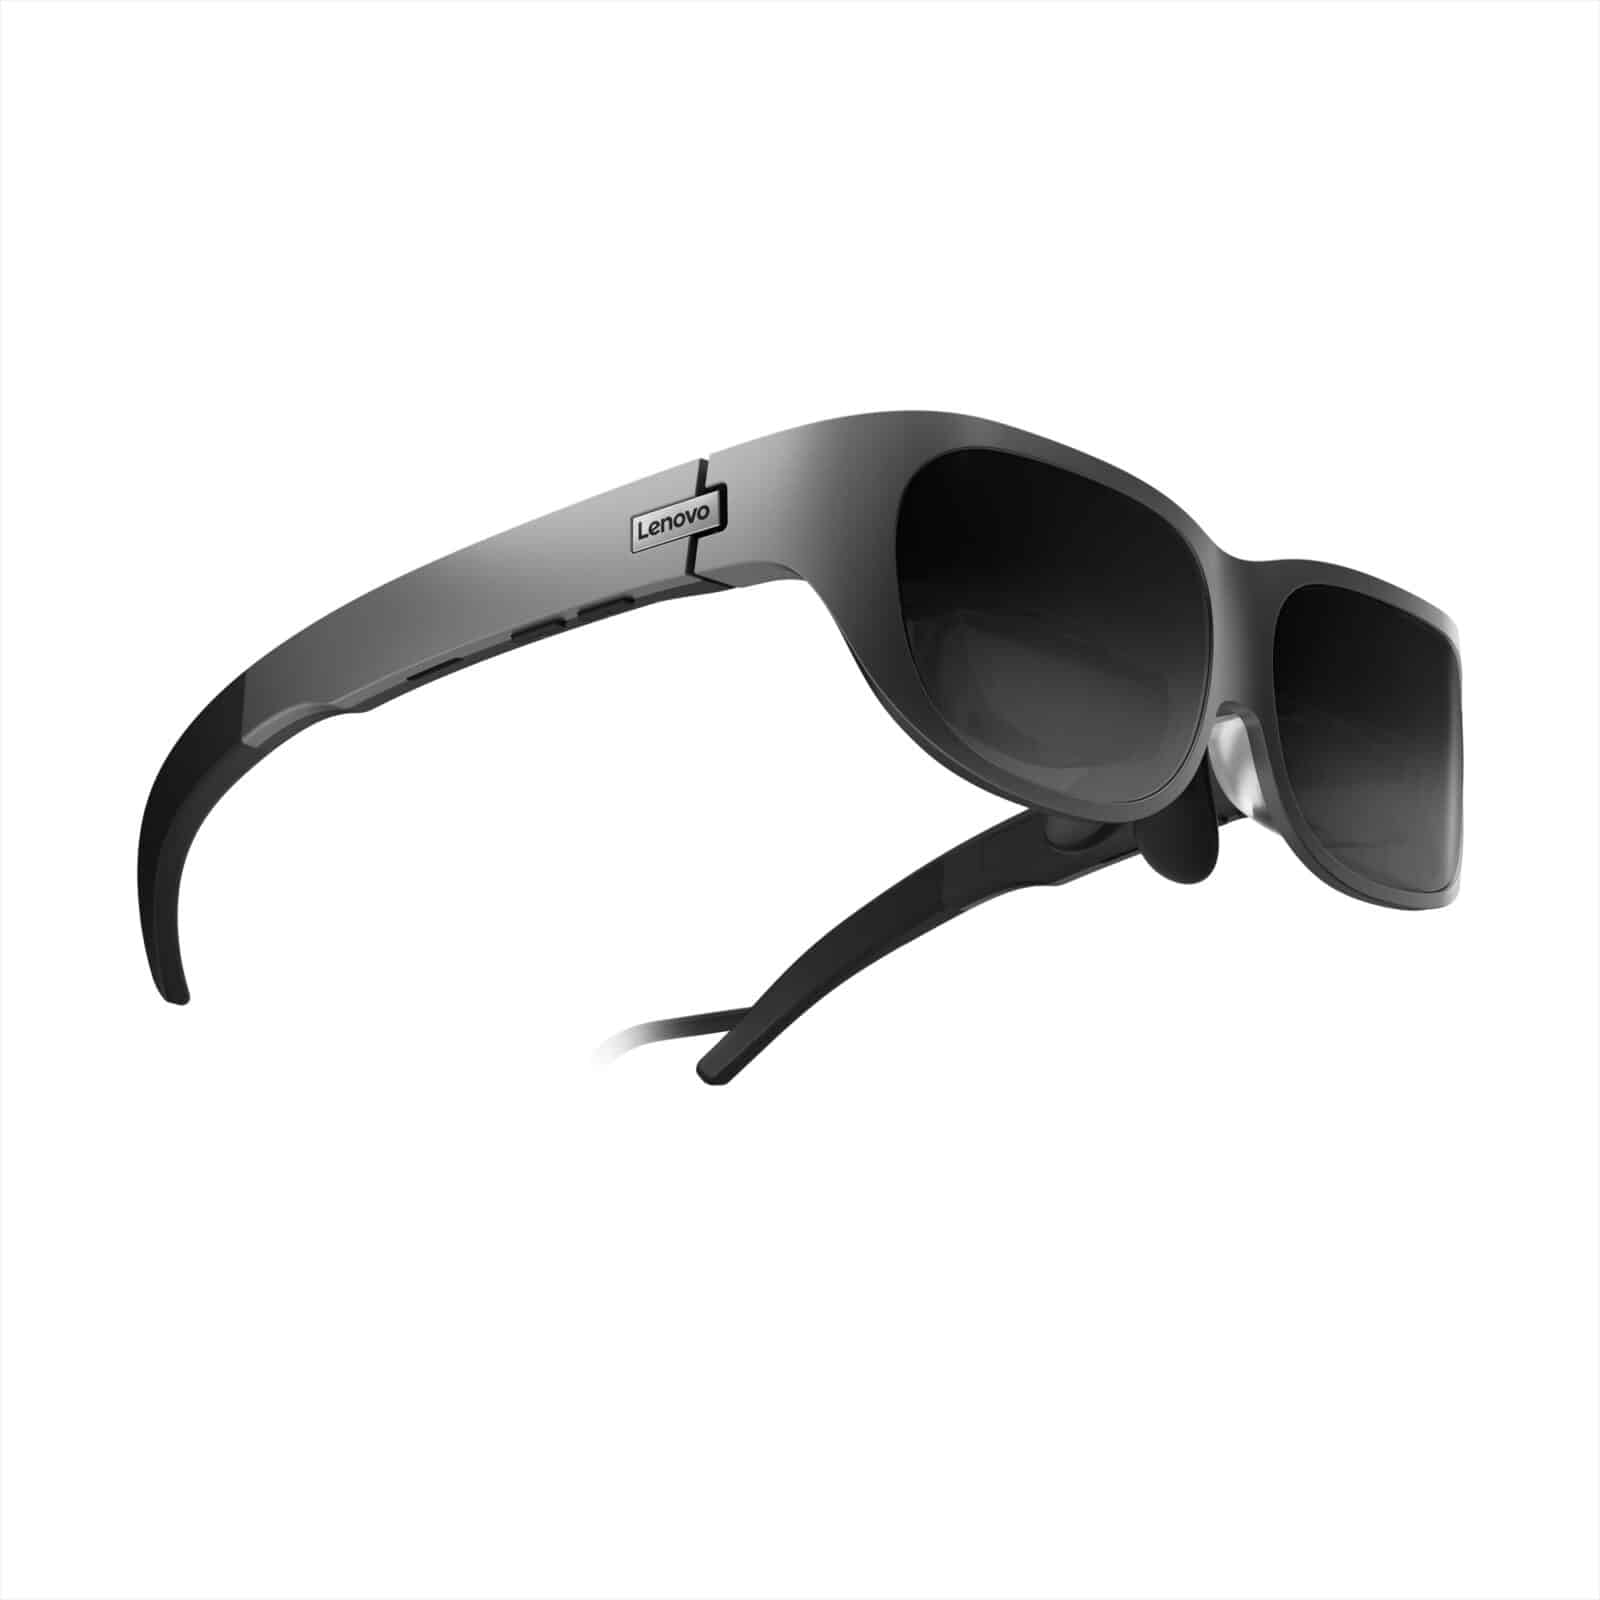 Lenovo Glasses T1 design 2